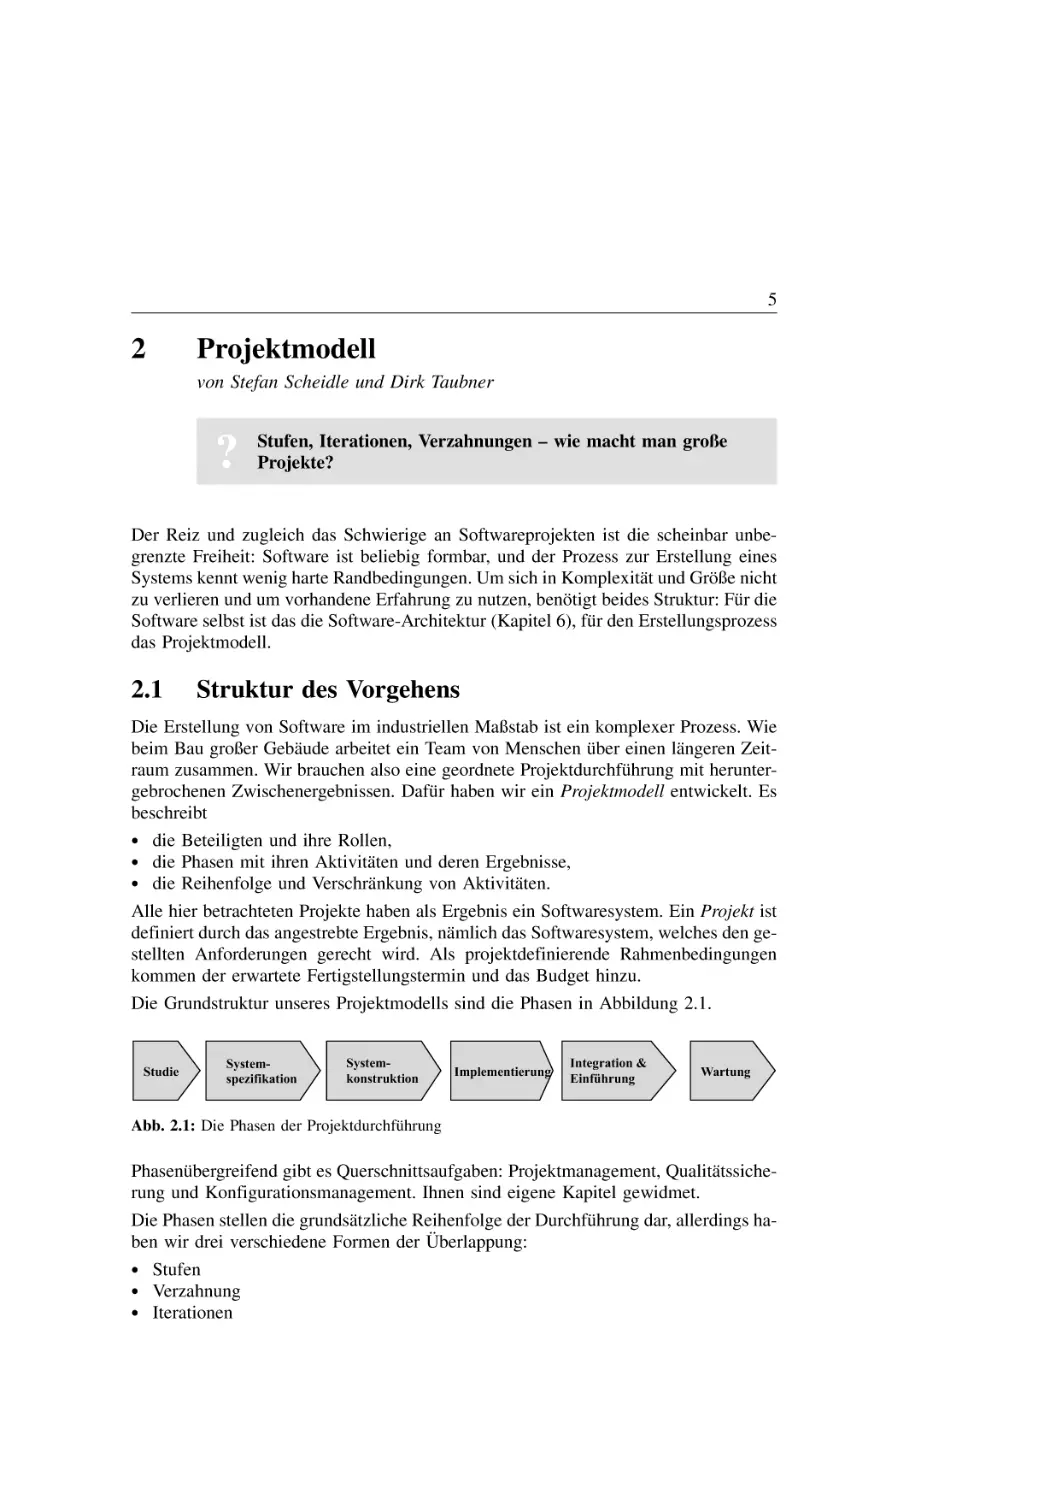 2. Projektmodell
2.1 Struktur des Vorgehens